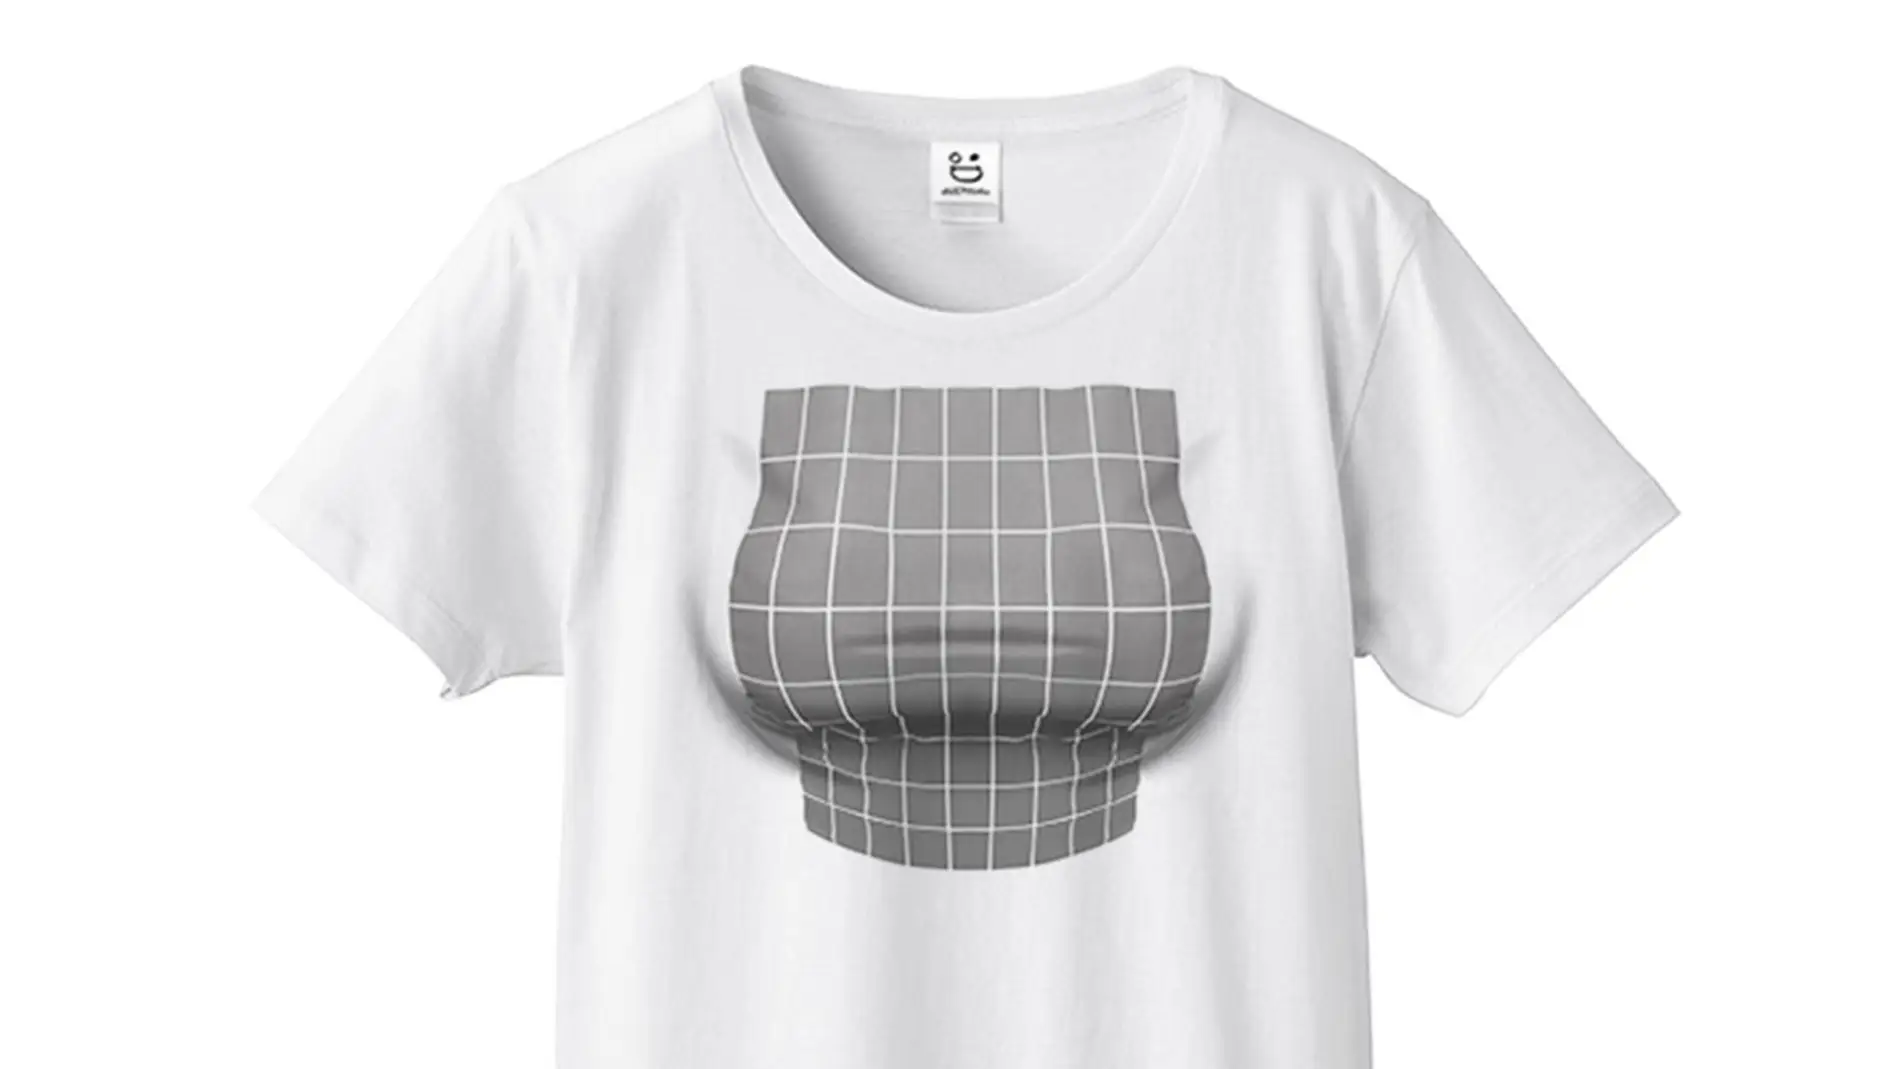 Camiseta japonesa con ilusión óptica